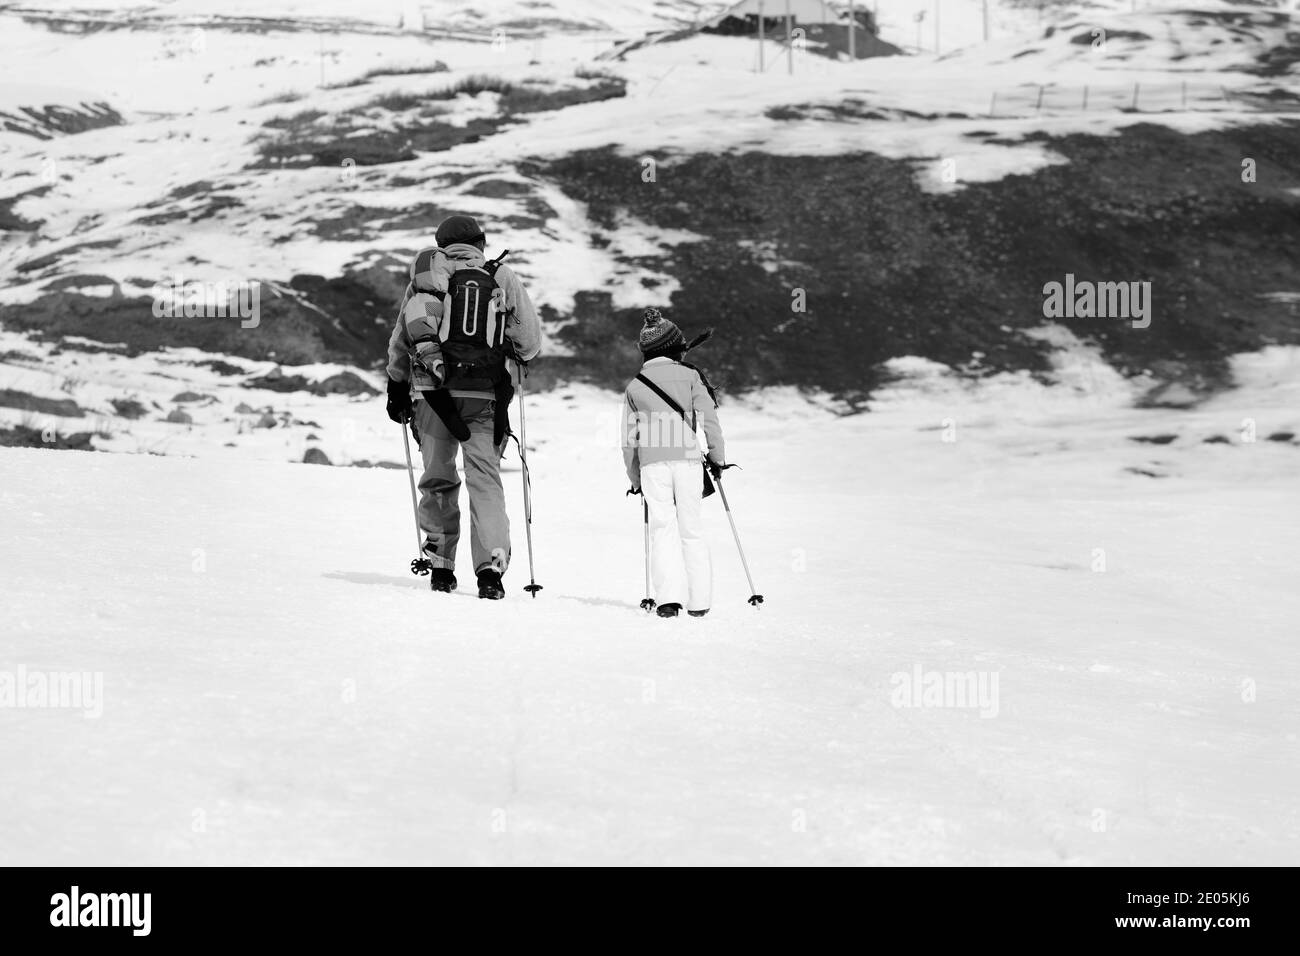 Vater und Tochter mit Skistöcken auf verschneite Piste im kleinen Schneewinter. Kaukasus, Georgien, Region Gudauri. Schwarzweißbild. Stockfoto